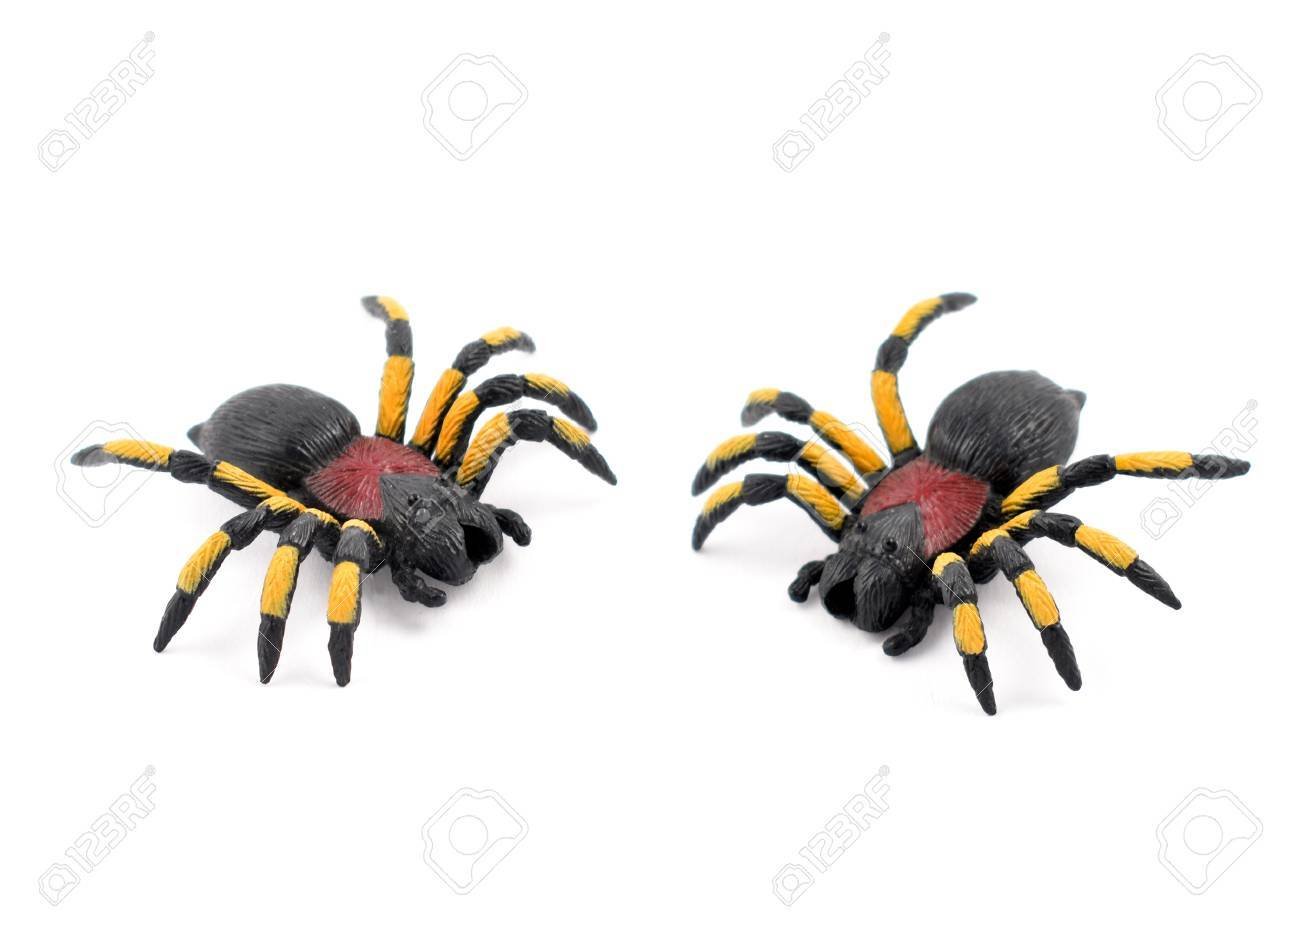 La cantidad total de patas en dos arañas: ¿cuántas son?